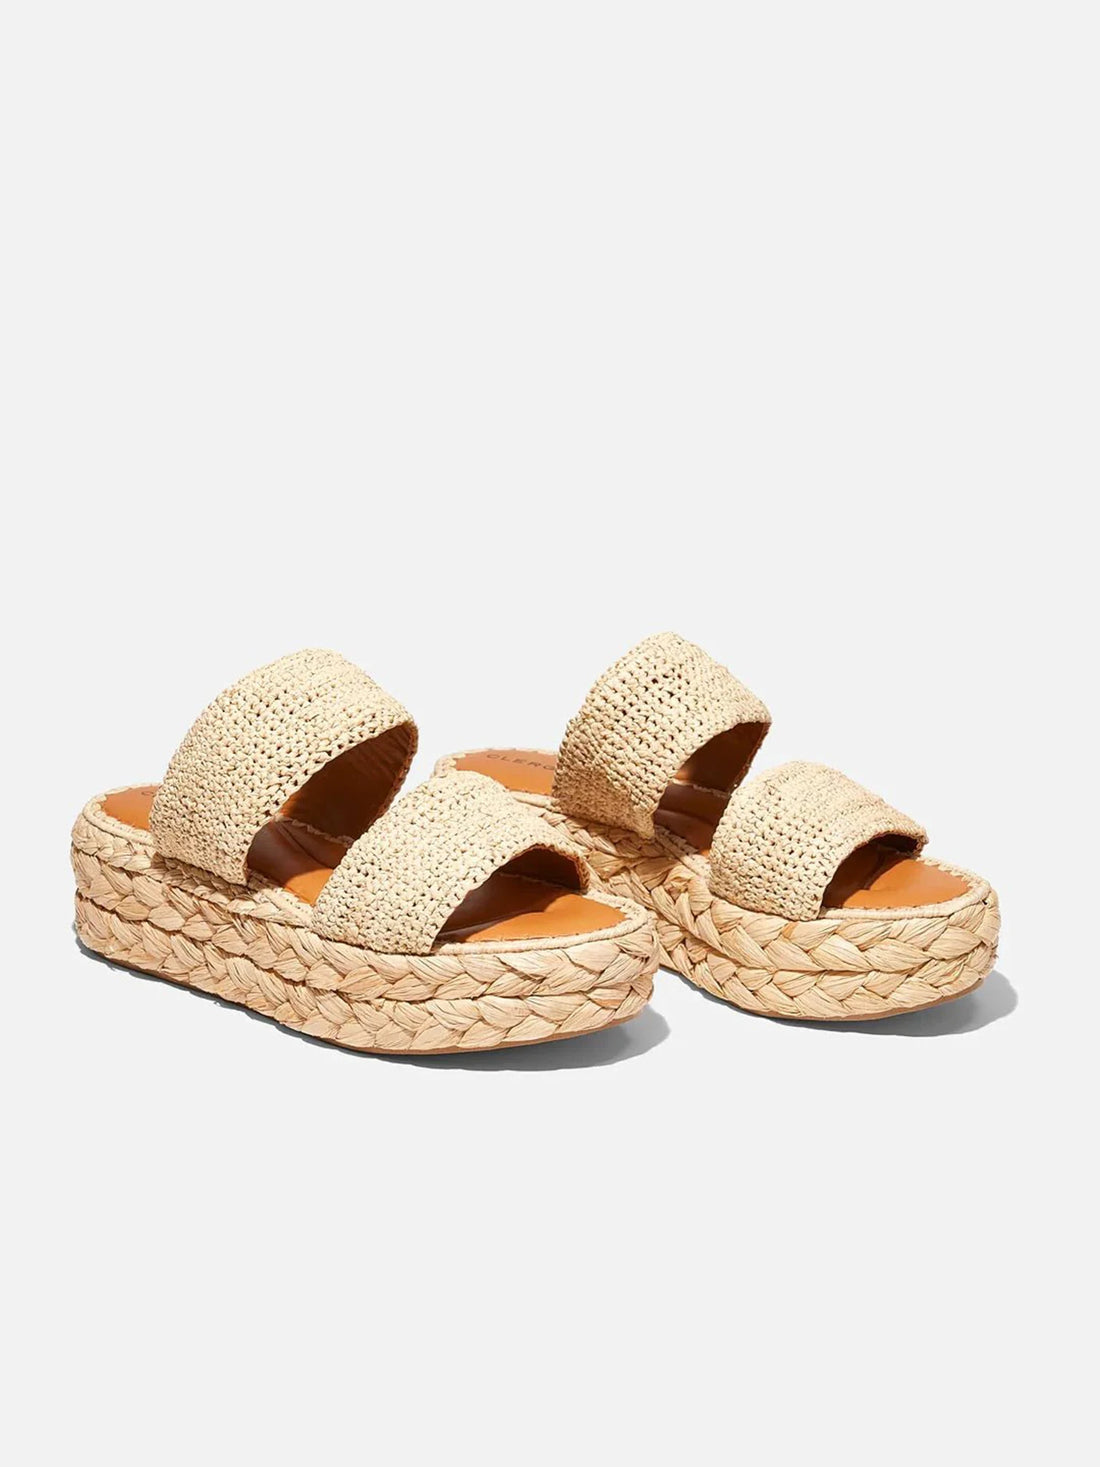 ARLENE slippers, natural straw